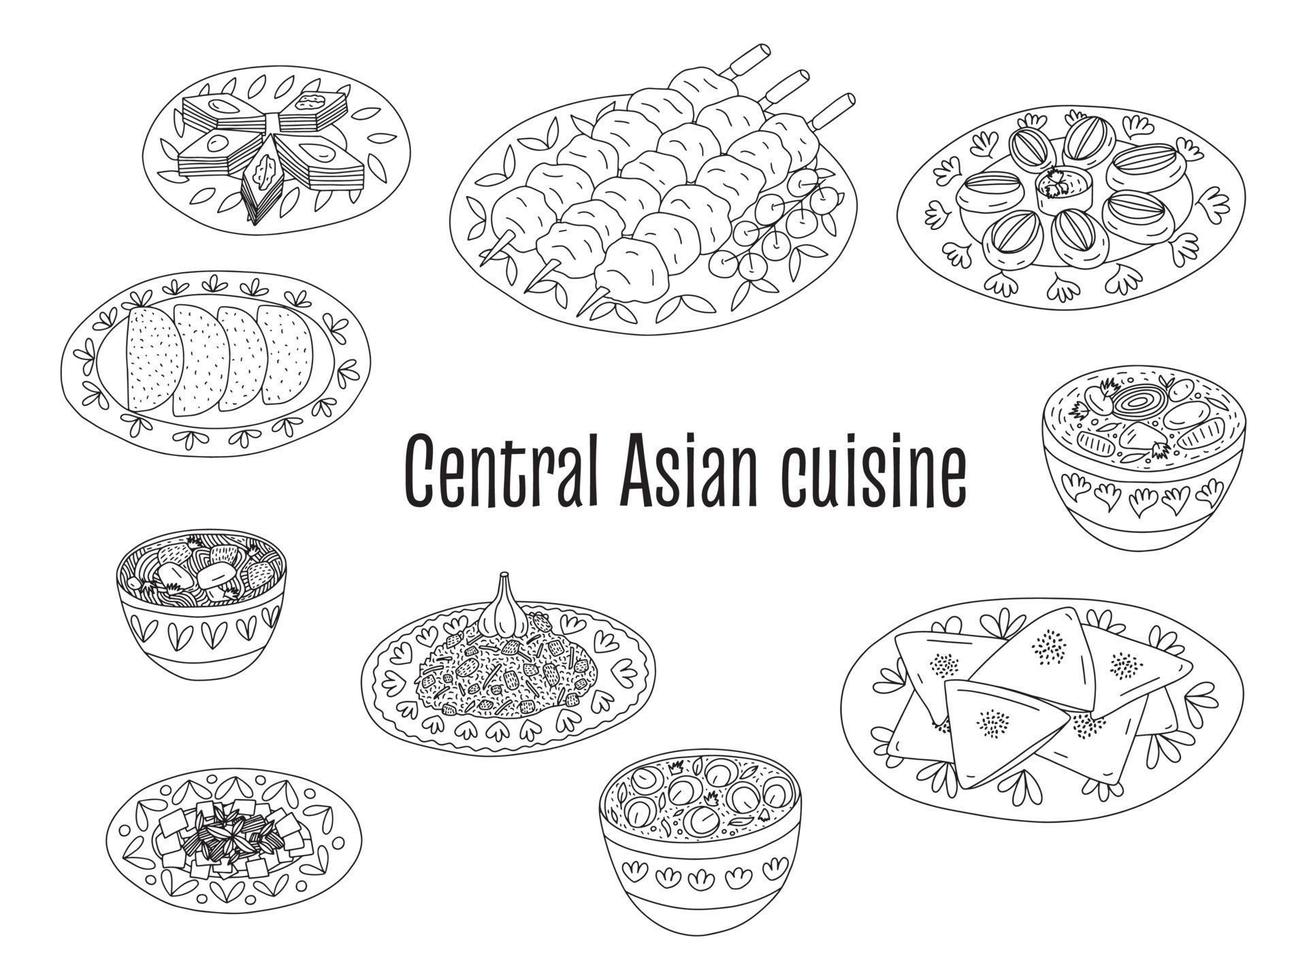 conjunto de vectores de platos de cocina de comida de Asia central. diferentes tipos de cocina centroasiática samsa, shorpa, shashlik, pilaf, sopa lagman y beshbarmak.